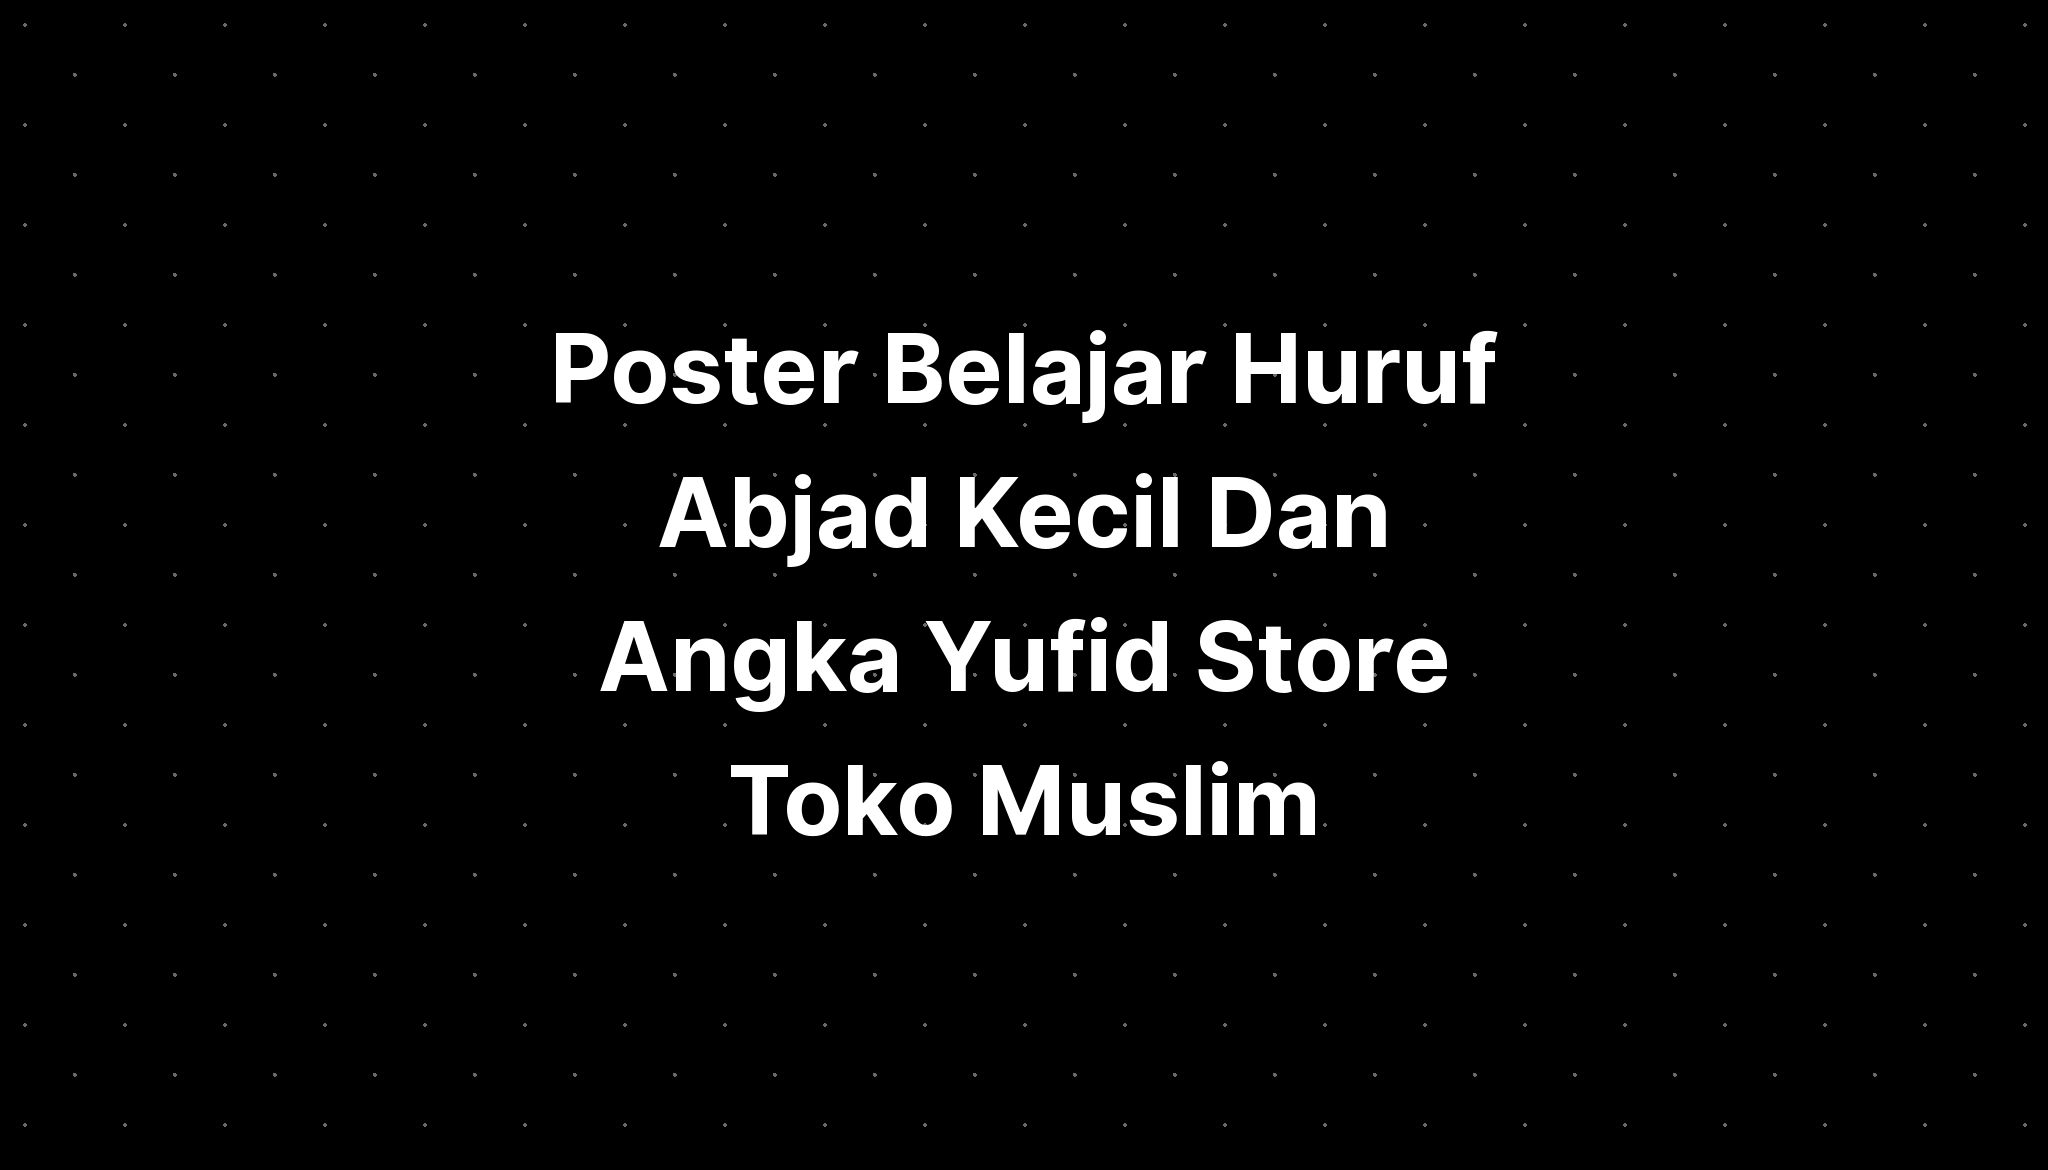 Poster Belajar Huruf Abjad Kecil Dan Angka Yufid Store Toko Muslim